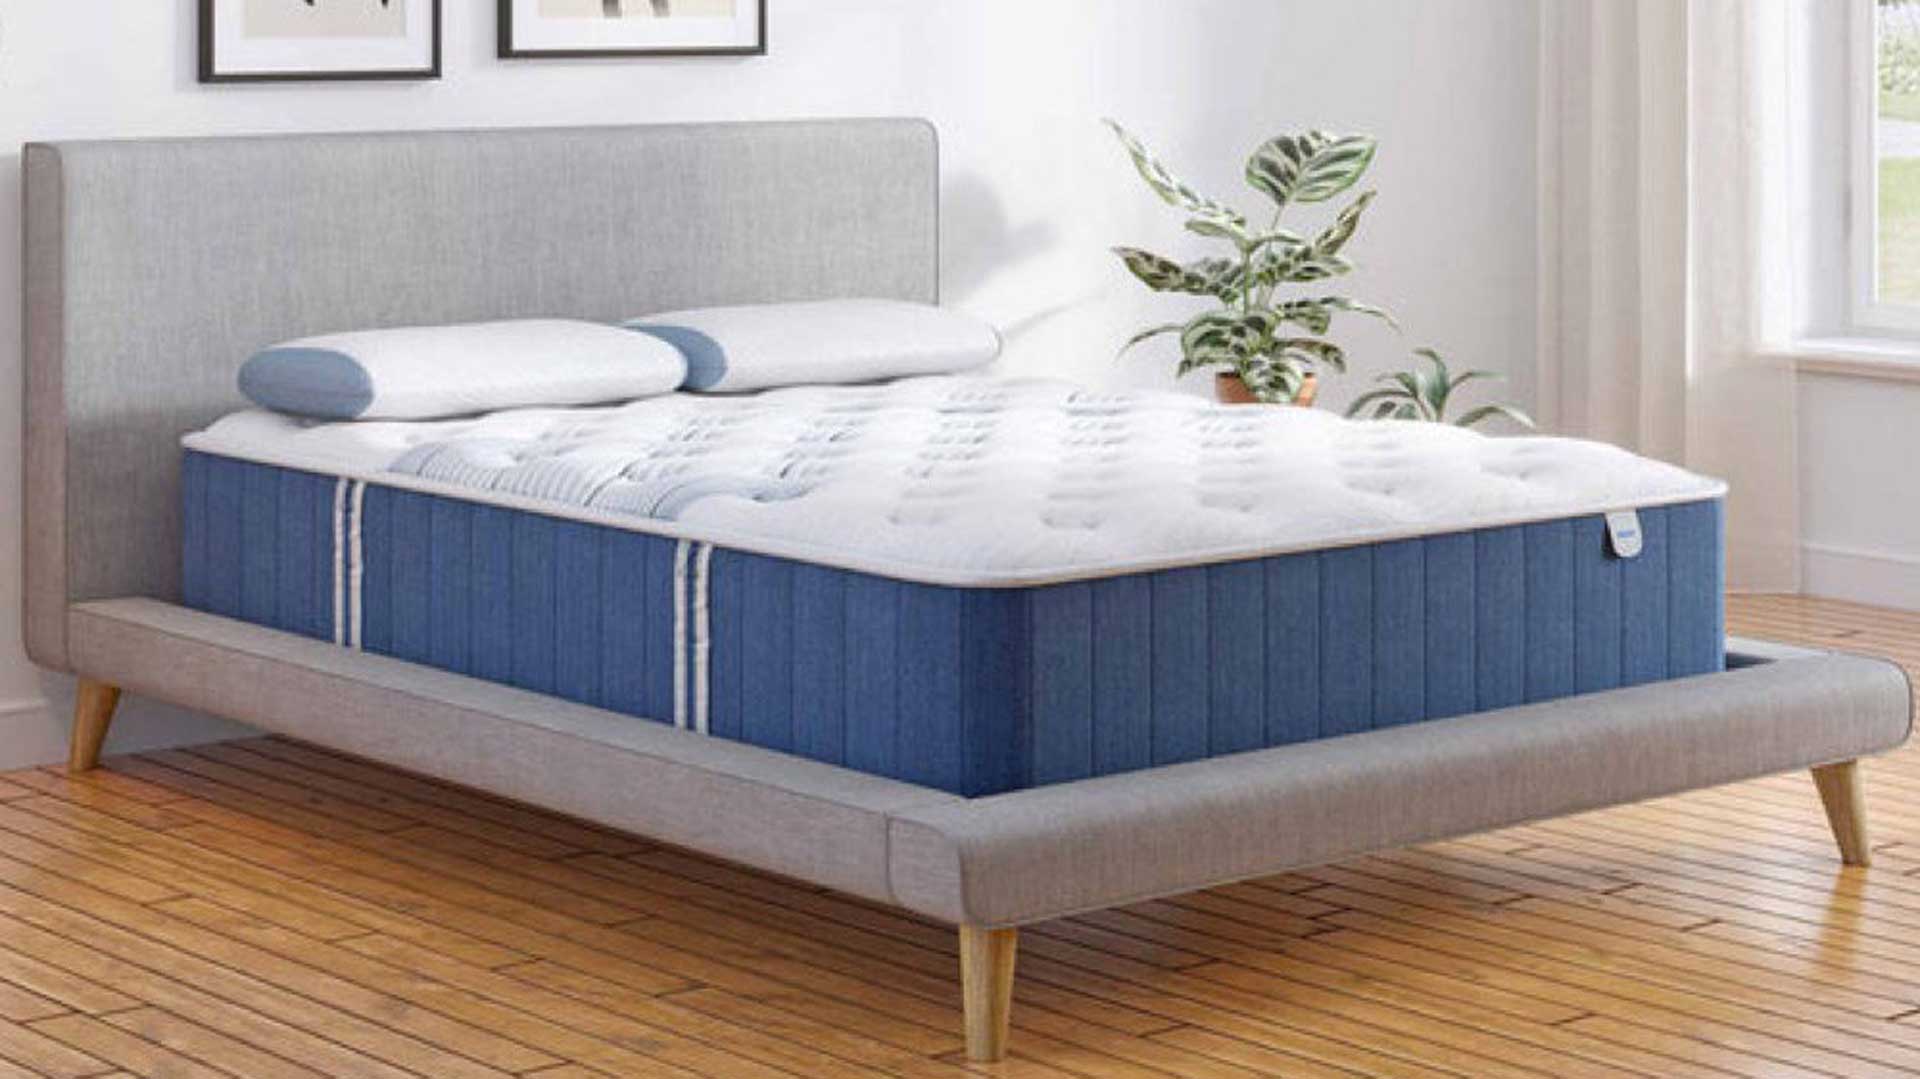 Is Puffy mattress better than Bear mattress?